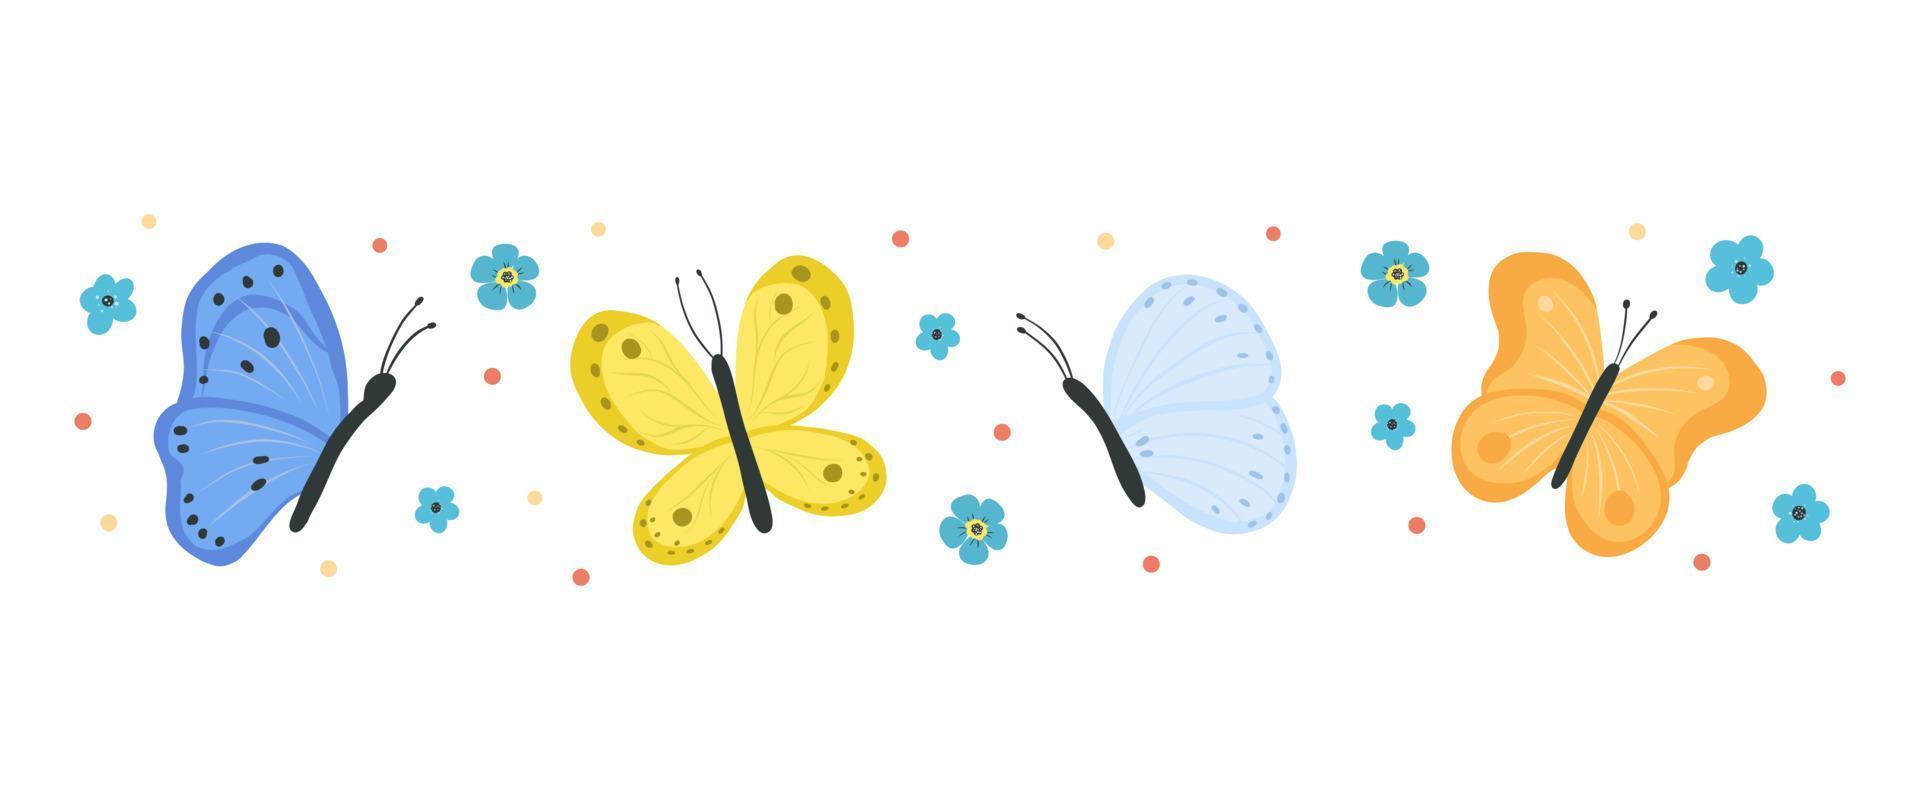 raccolta di farfalle e falene isolate su sfondo bianco. set di insetti volanti con ali colorate. fascio di elementi decorativi di design. illustrazione vettoriale piatta.